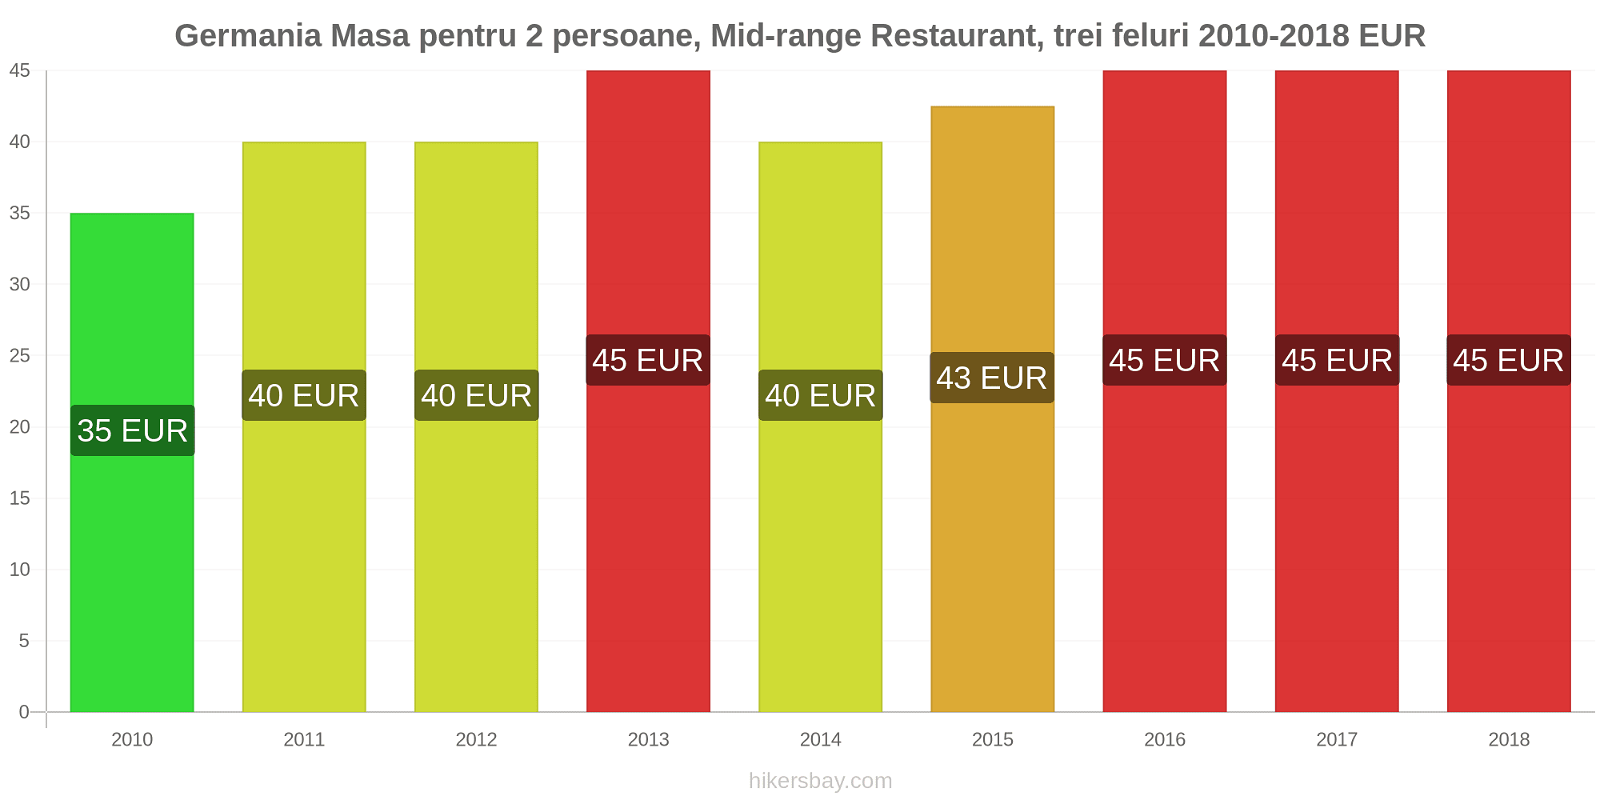 Germania schimbări de prețuri Masă pentru 2 persoane, restaurant de gamă medie, trei feluri de mâncare hikersbay.com